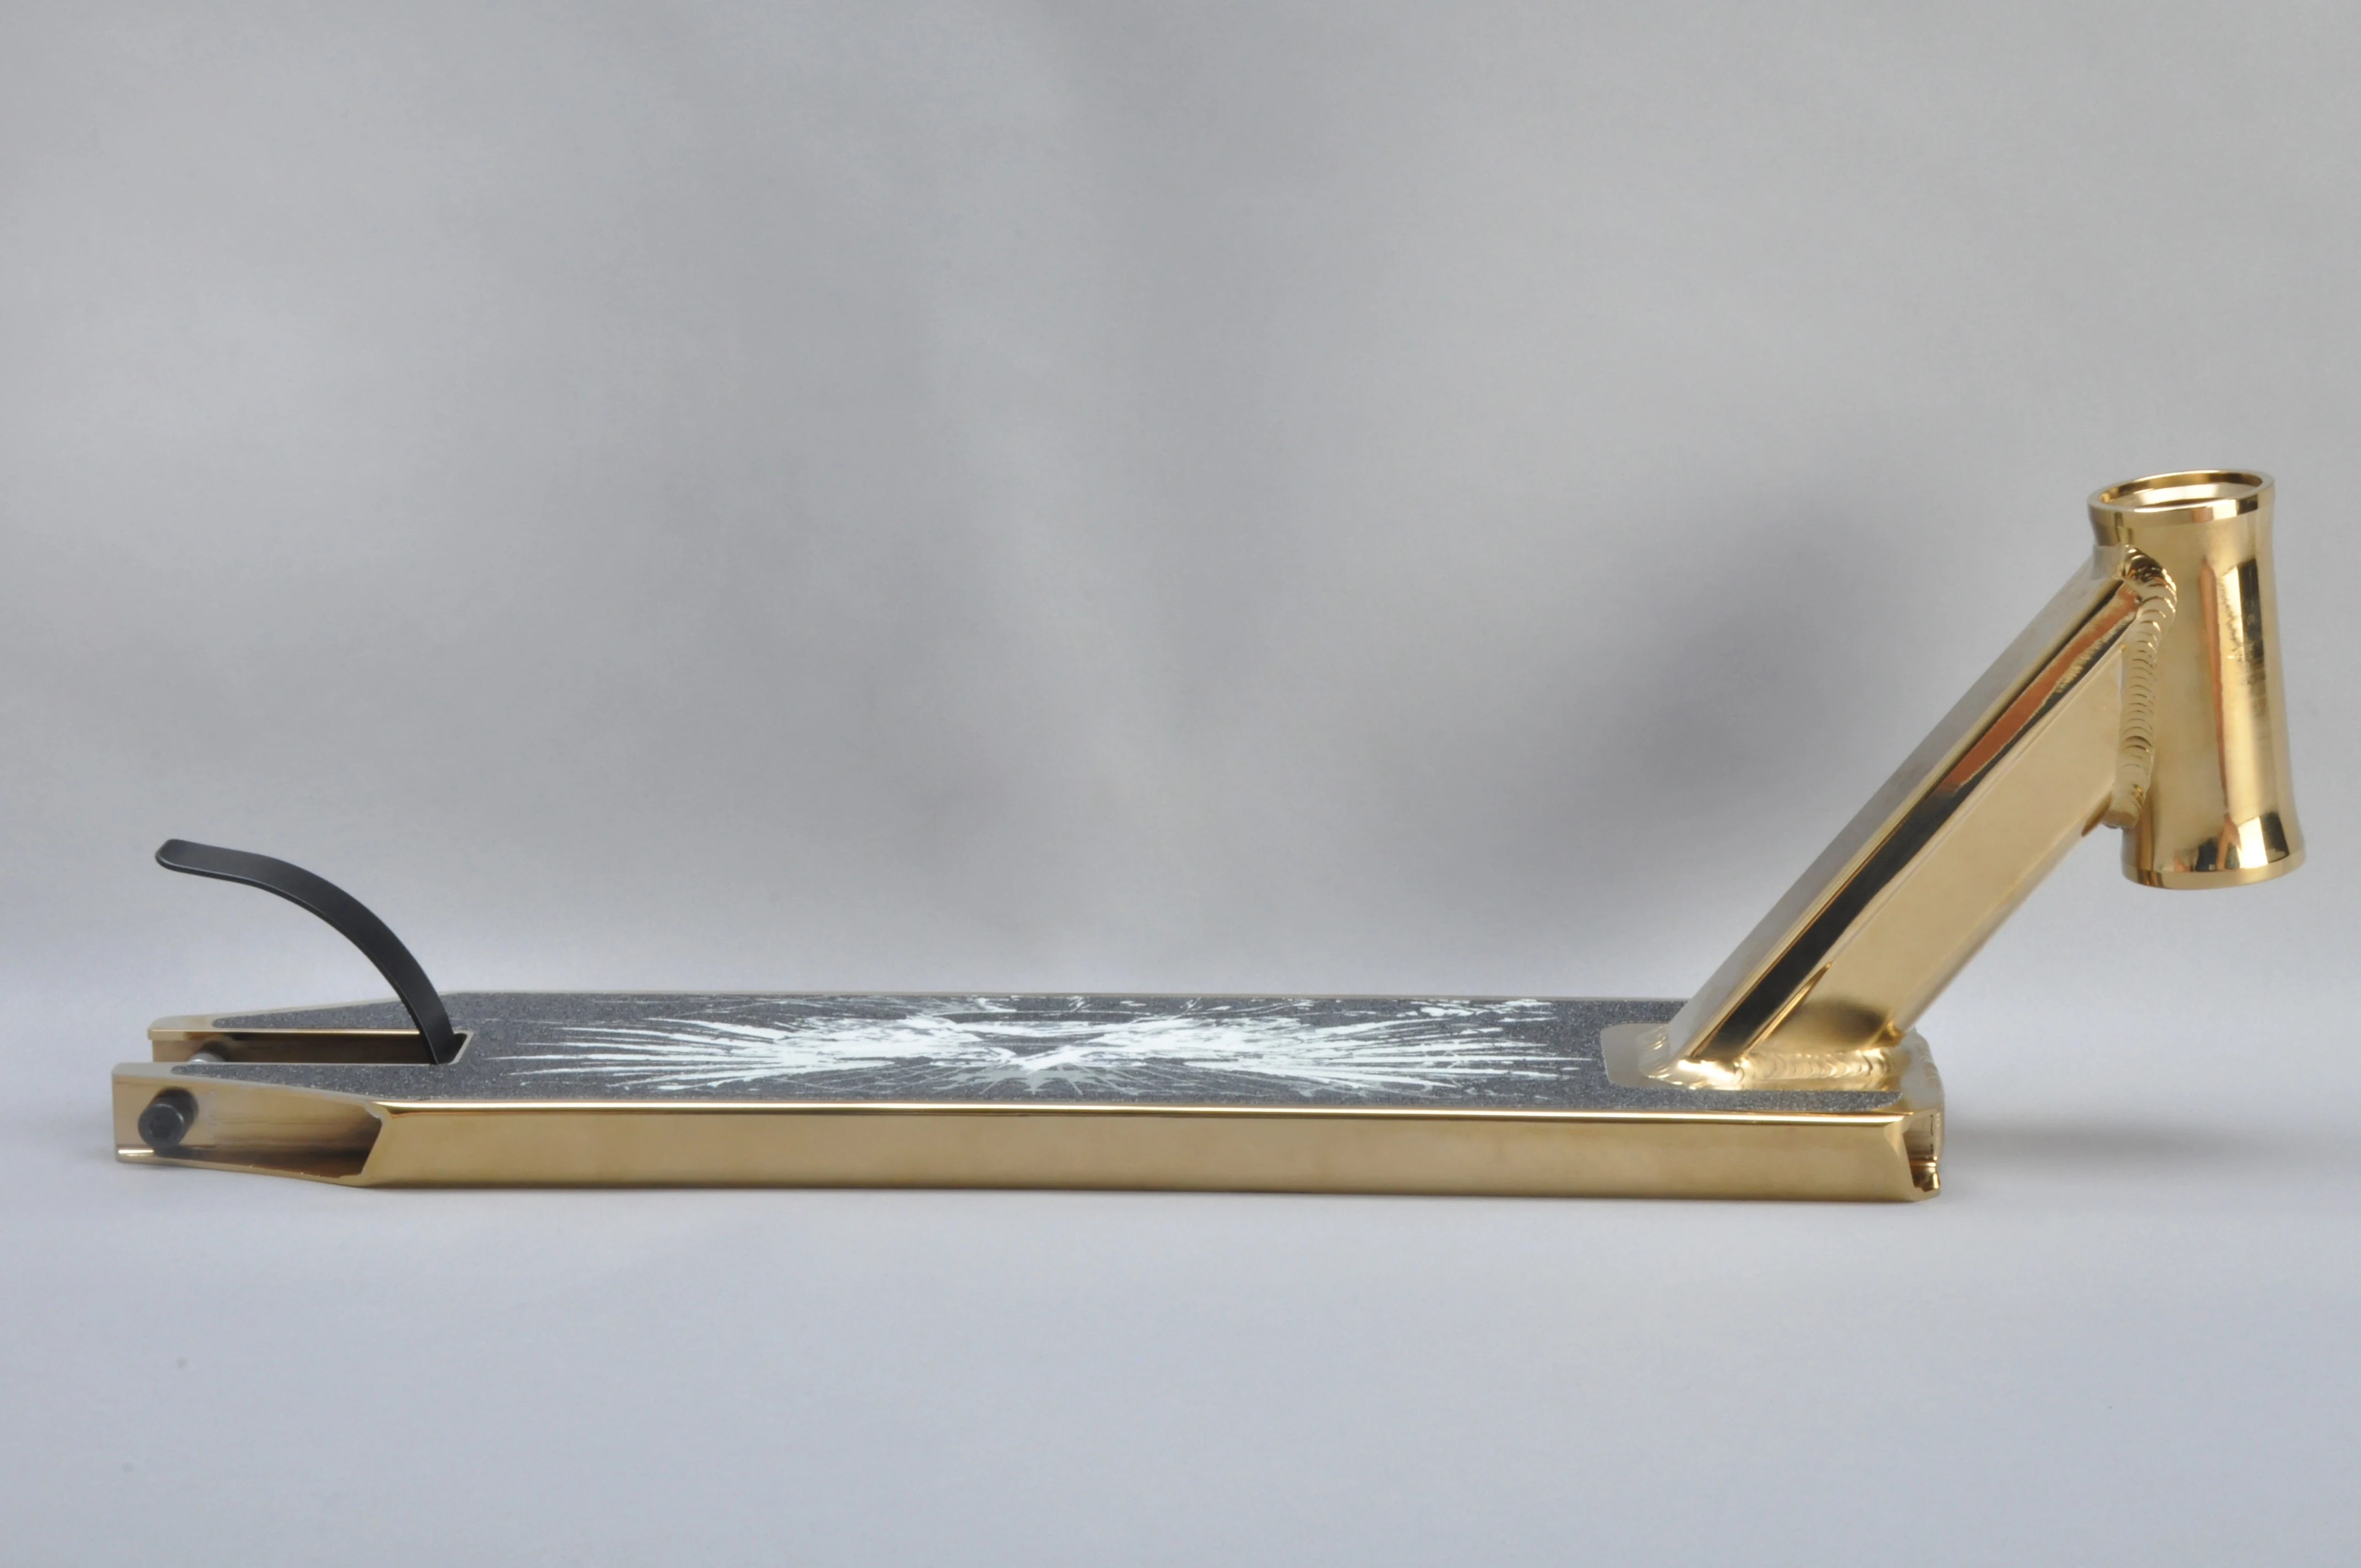 PVD золото вырезанная сварочная структура высокого класса профессиональный Фристайл уличный скутер части экстремальный трюк скутер палуба